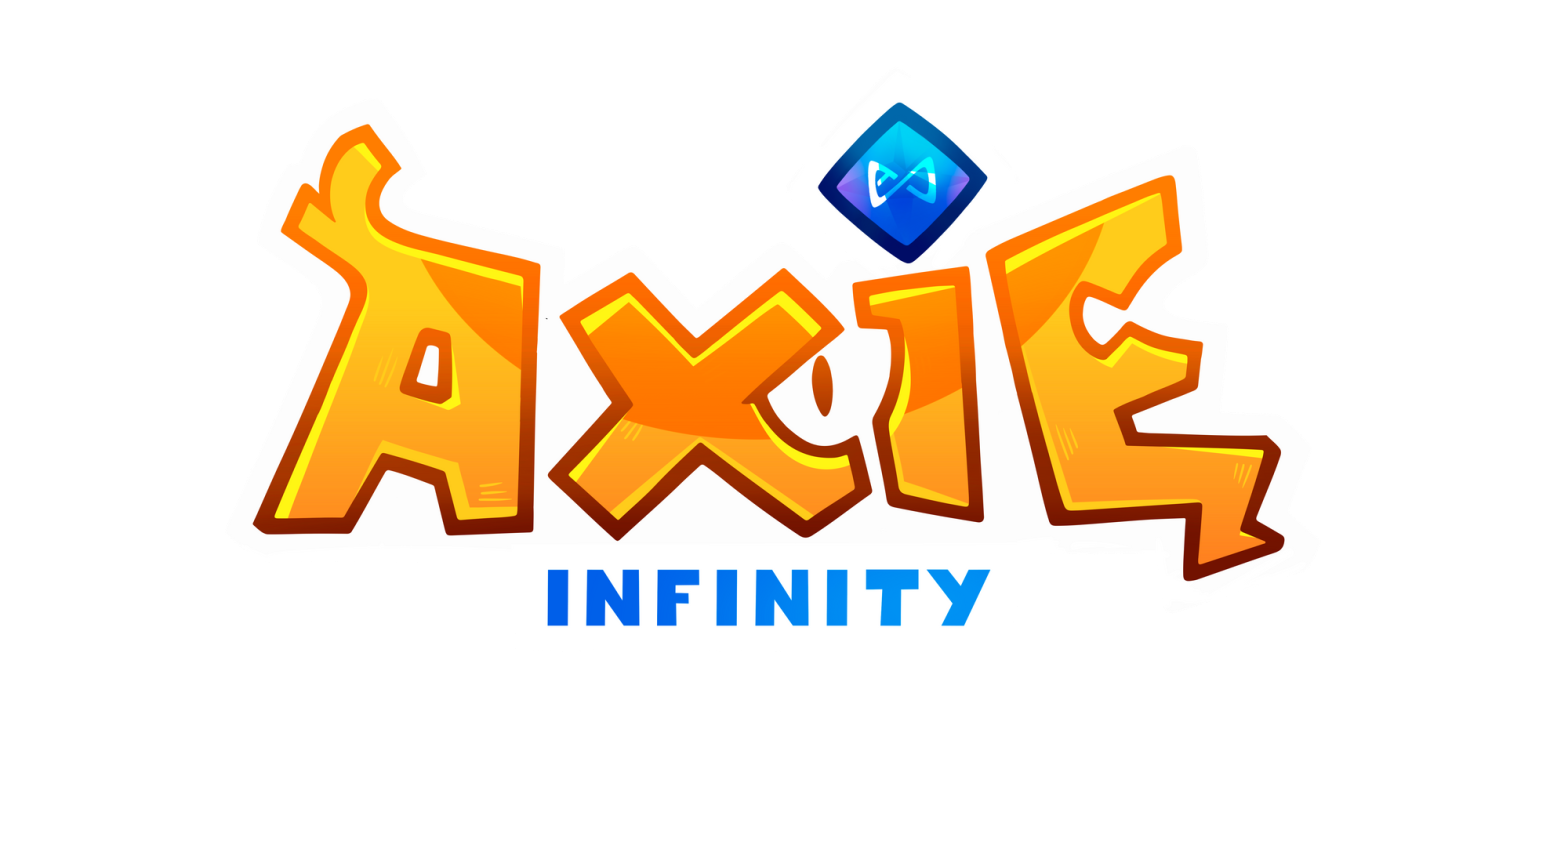 Logo Axie Infinity